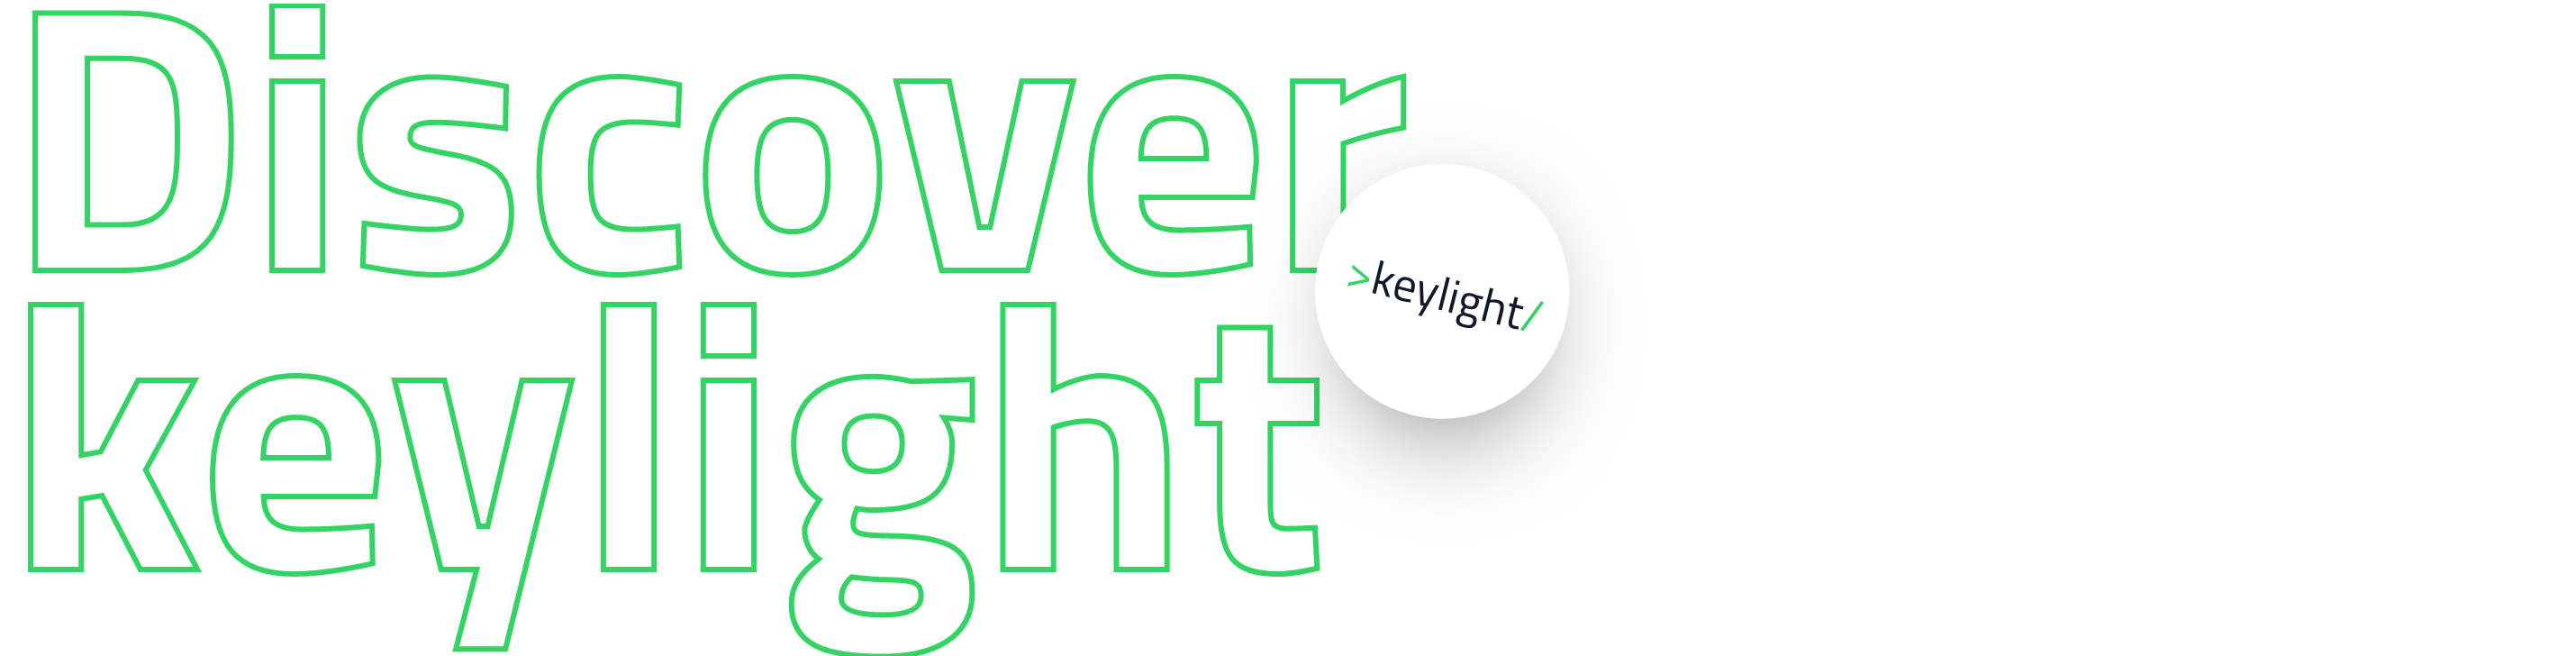 keylight-1